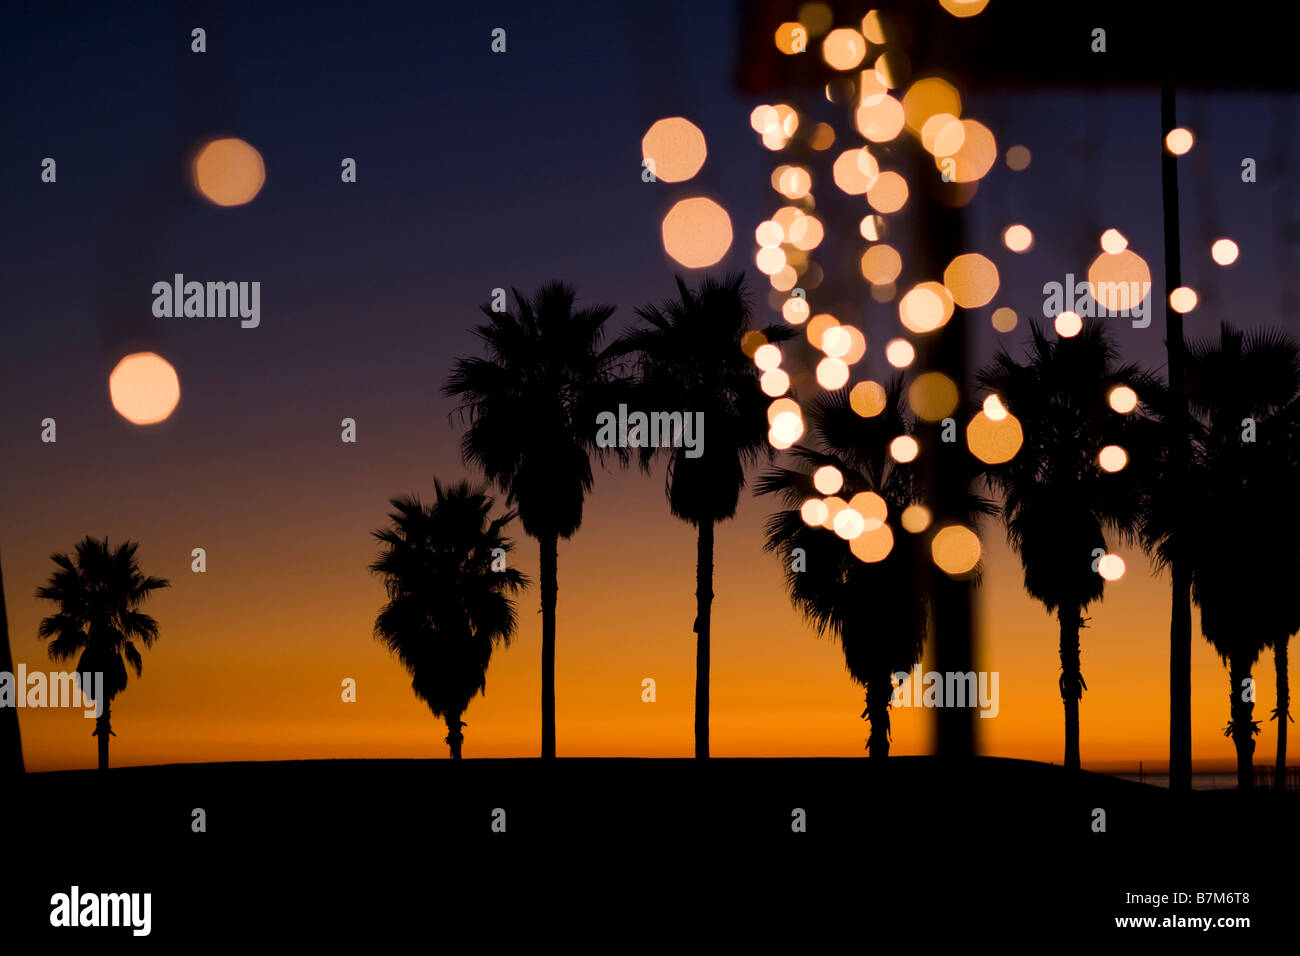 Palmiers au coucher du soleil avec des lumières de Noël Venice Beach Los Angeles County California United States of America Banque D'Images